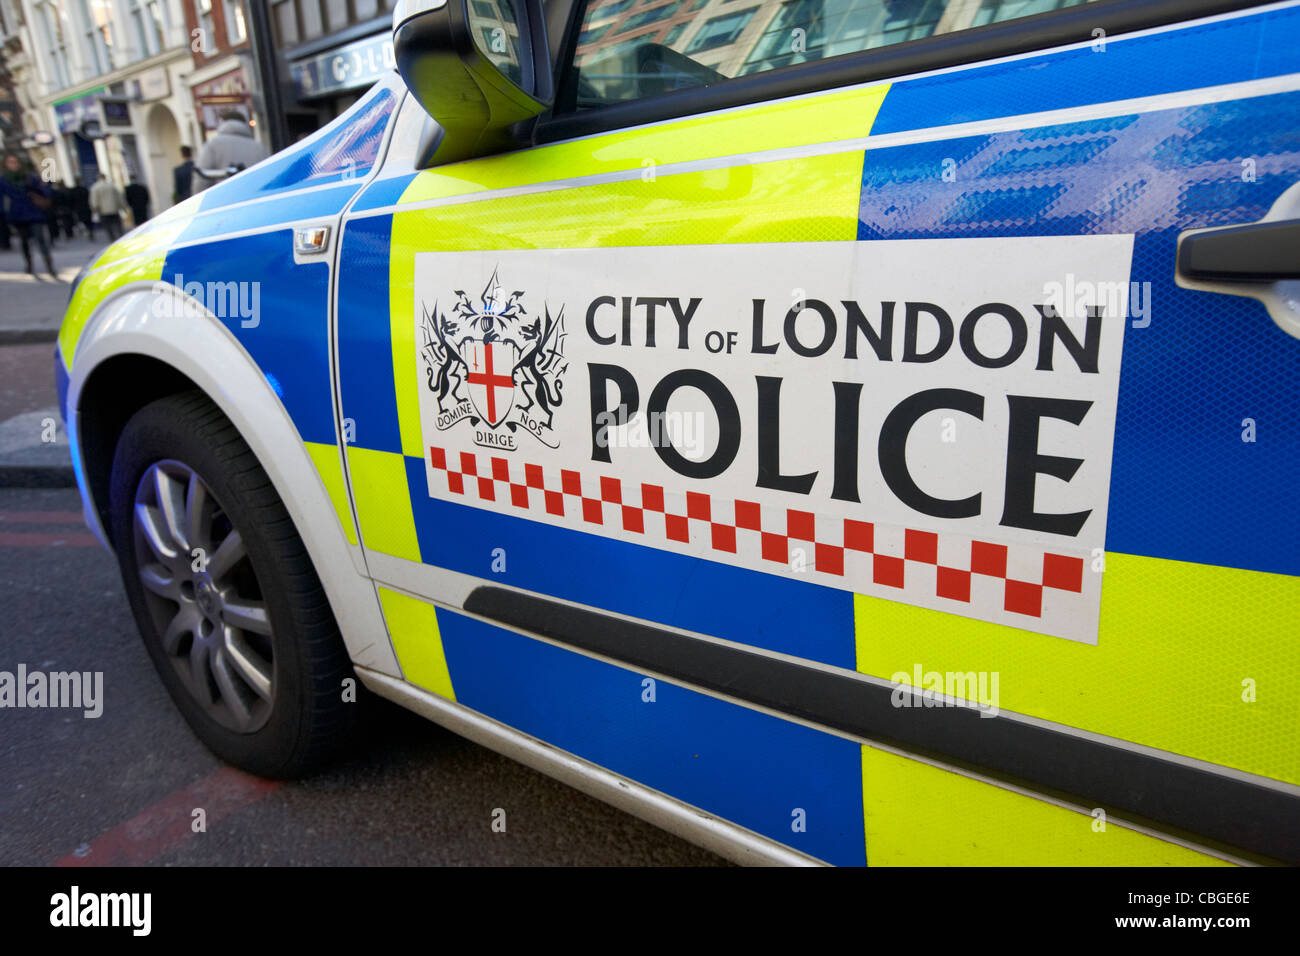 city of london police vehicle london england uk united kingdom Stock Photo